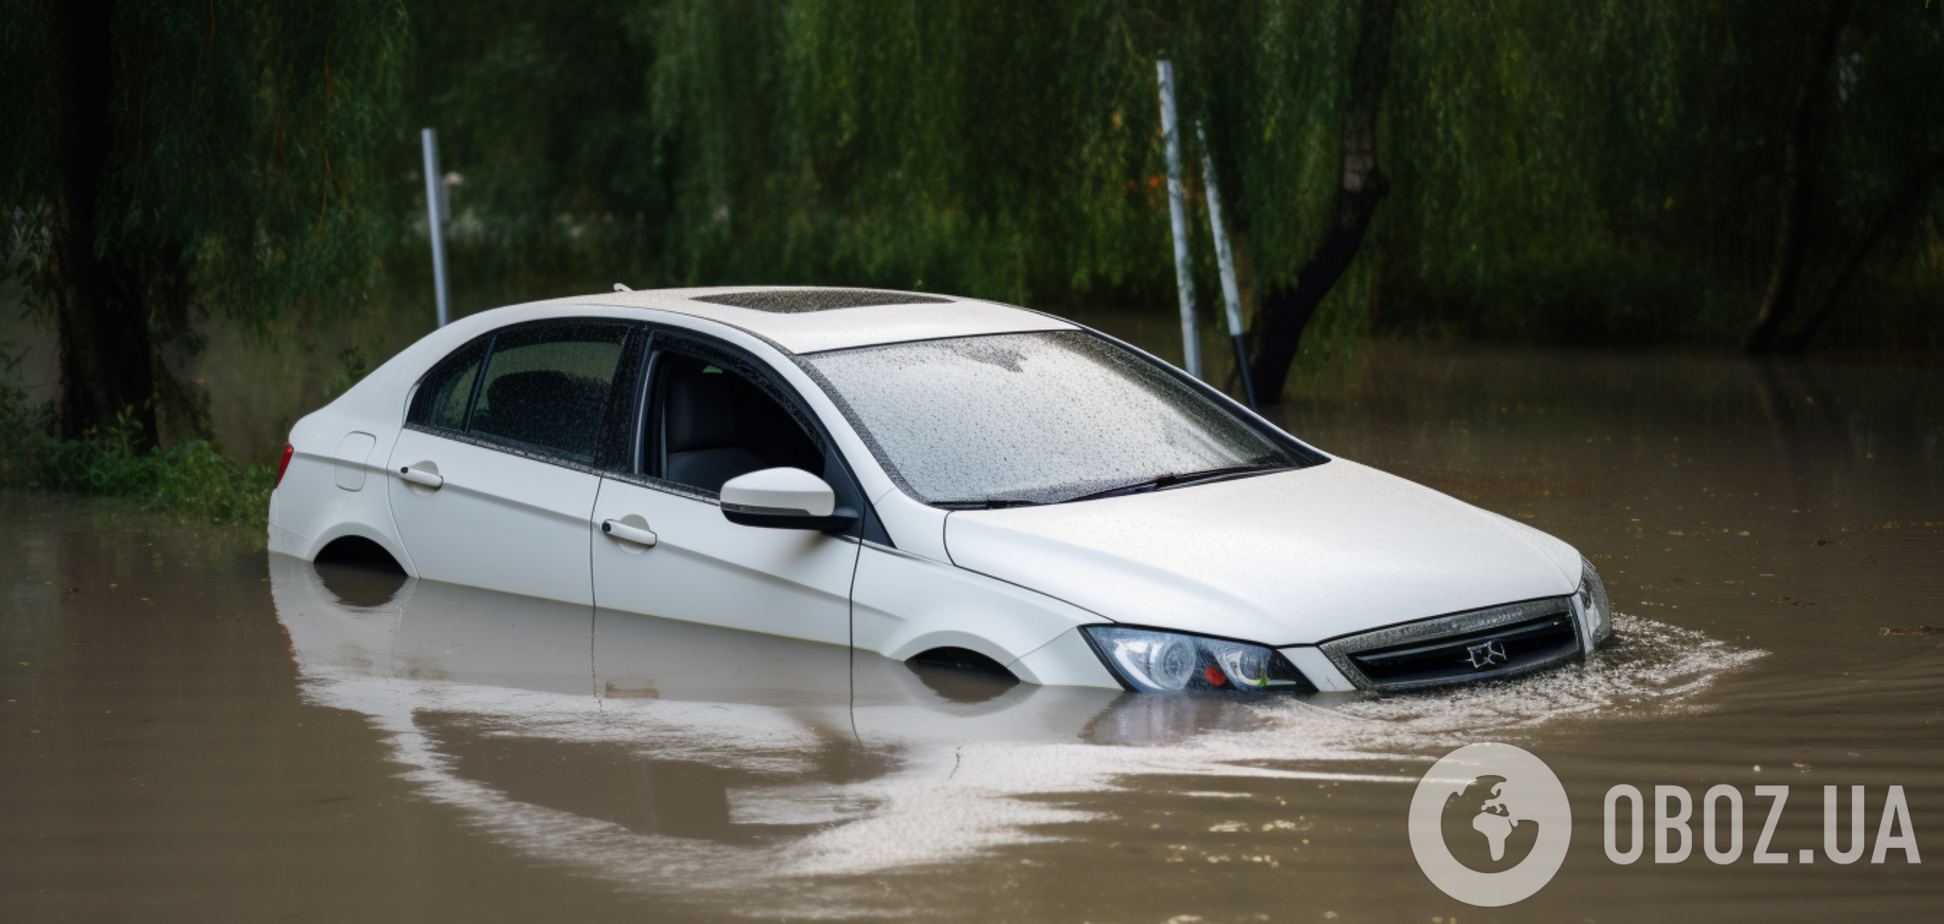 Що робити, якщо ваше авто затонуло: як швидко врятуватися з-під води